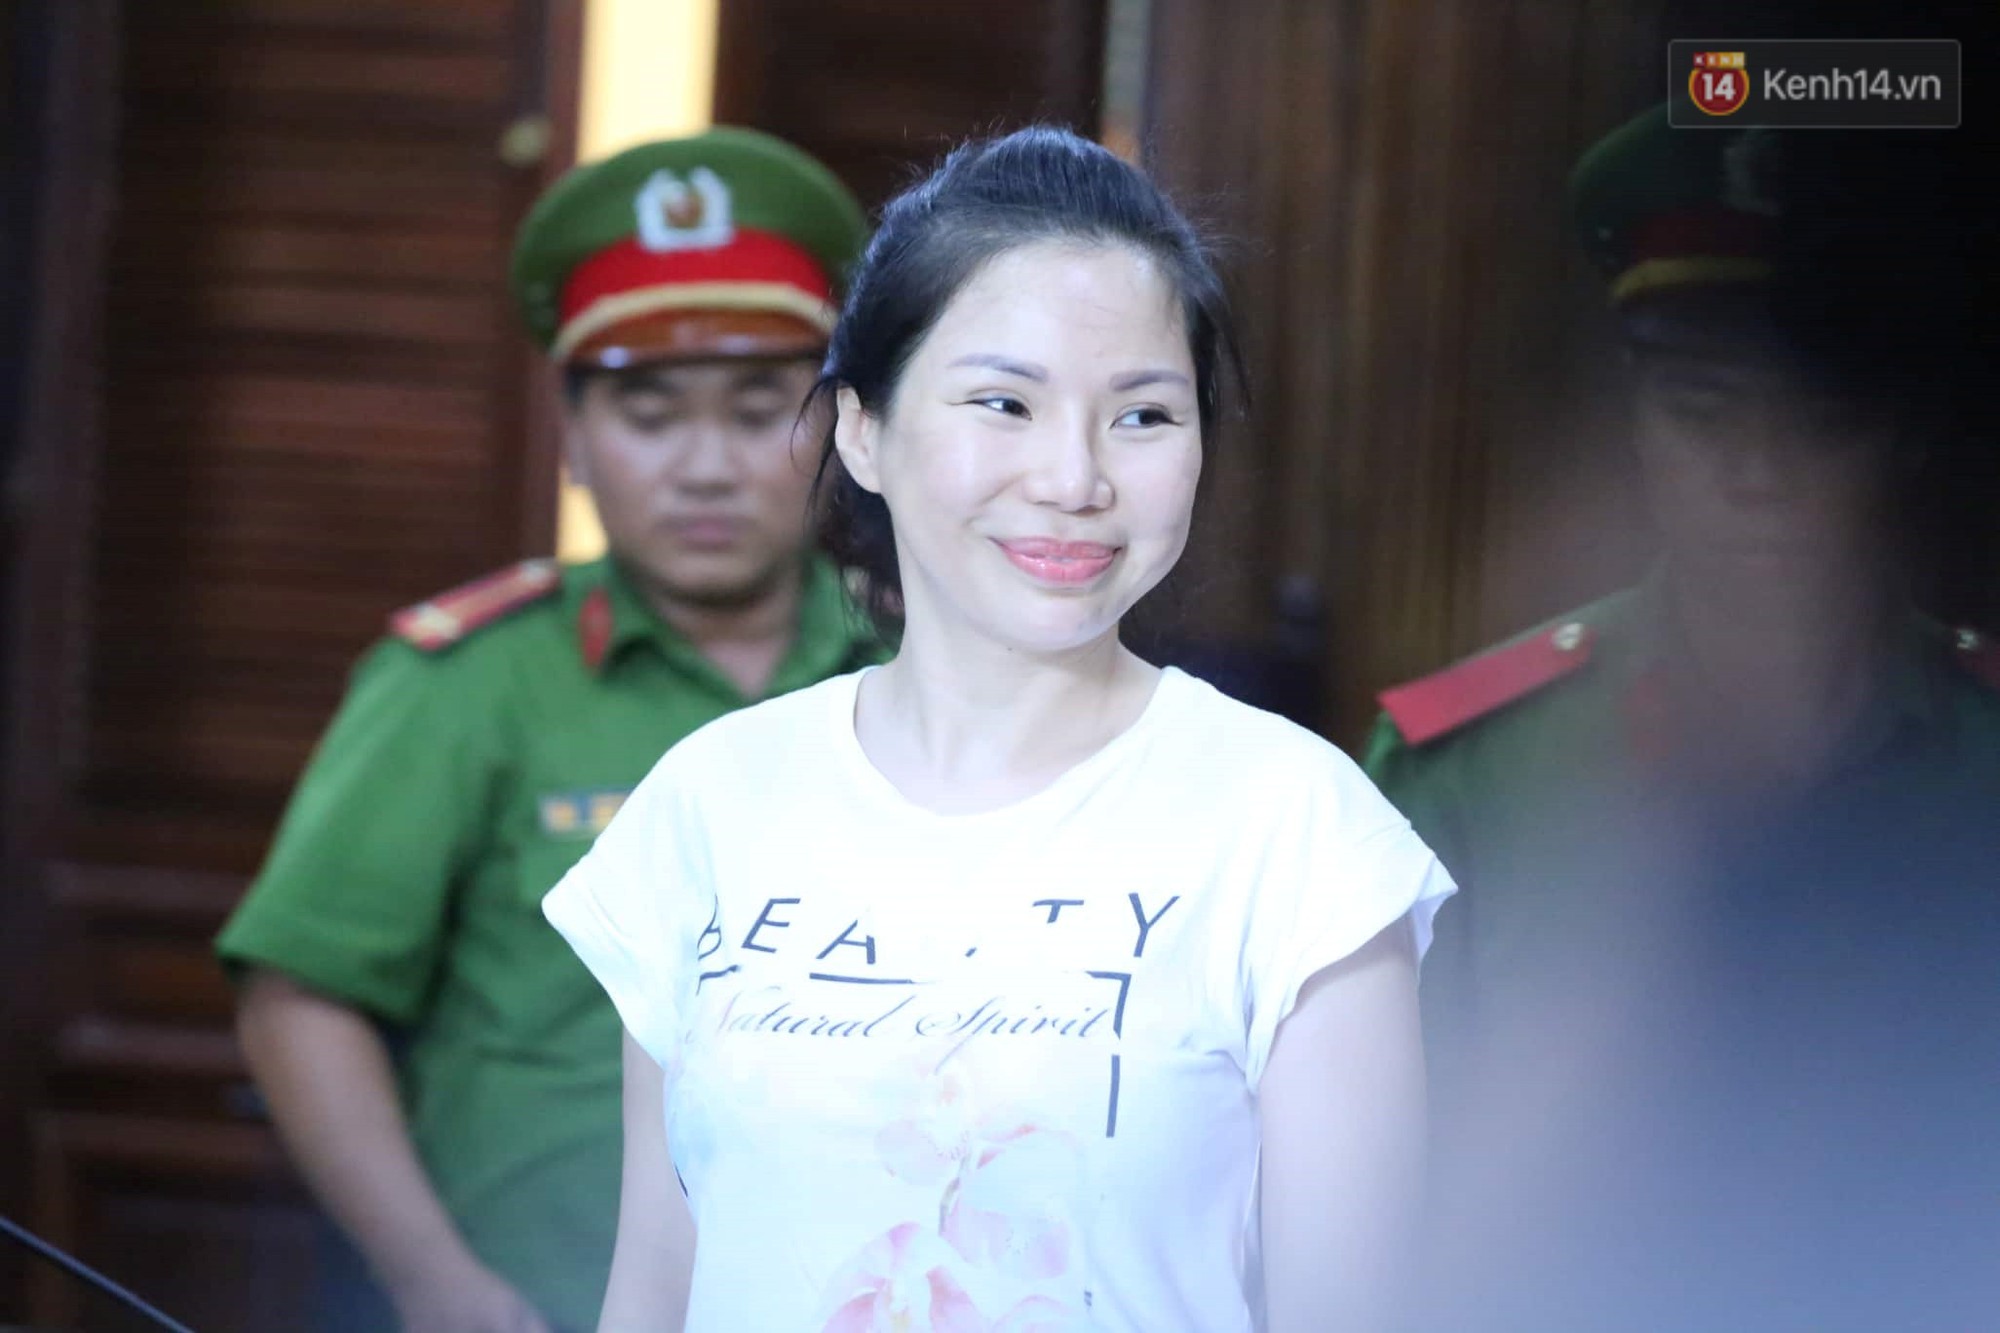 Vợ cũ lĩnh án 18 tháng tù, bác sĩ Chiêm Quốc Thái tuyên bố sẽ kháng cáo - Ảnh 2.